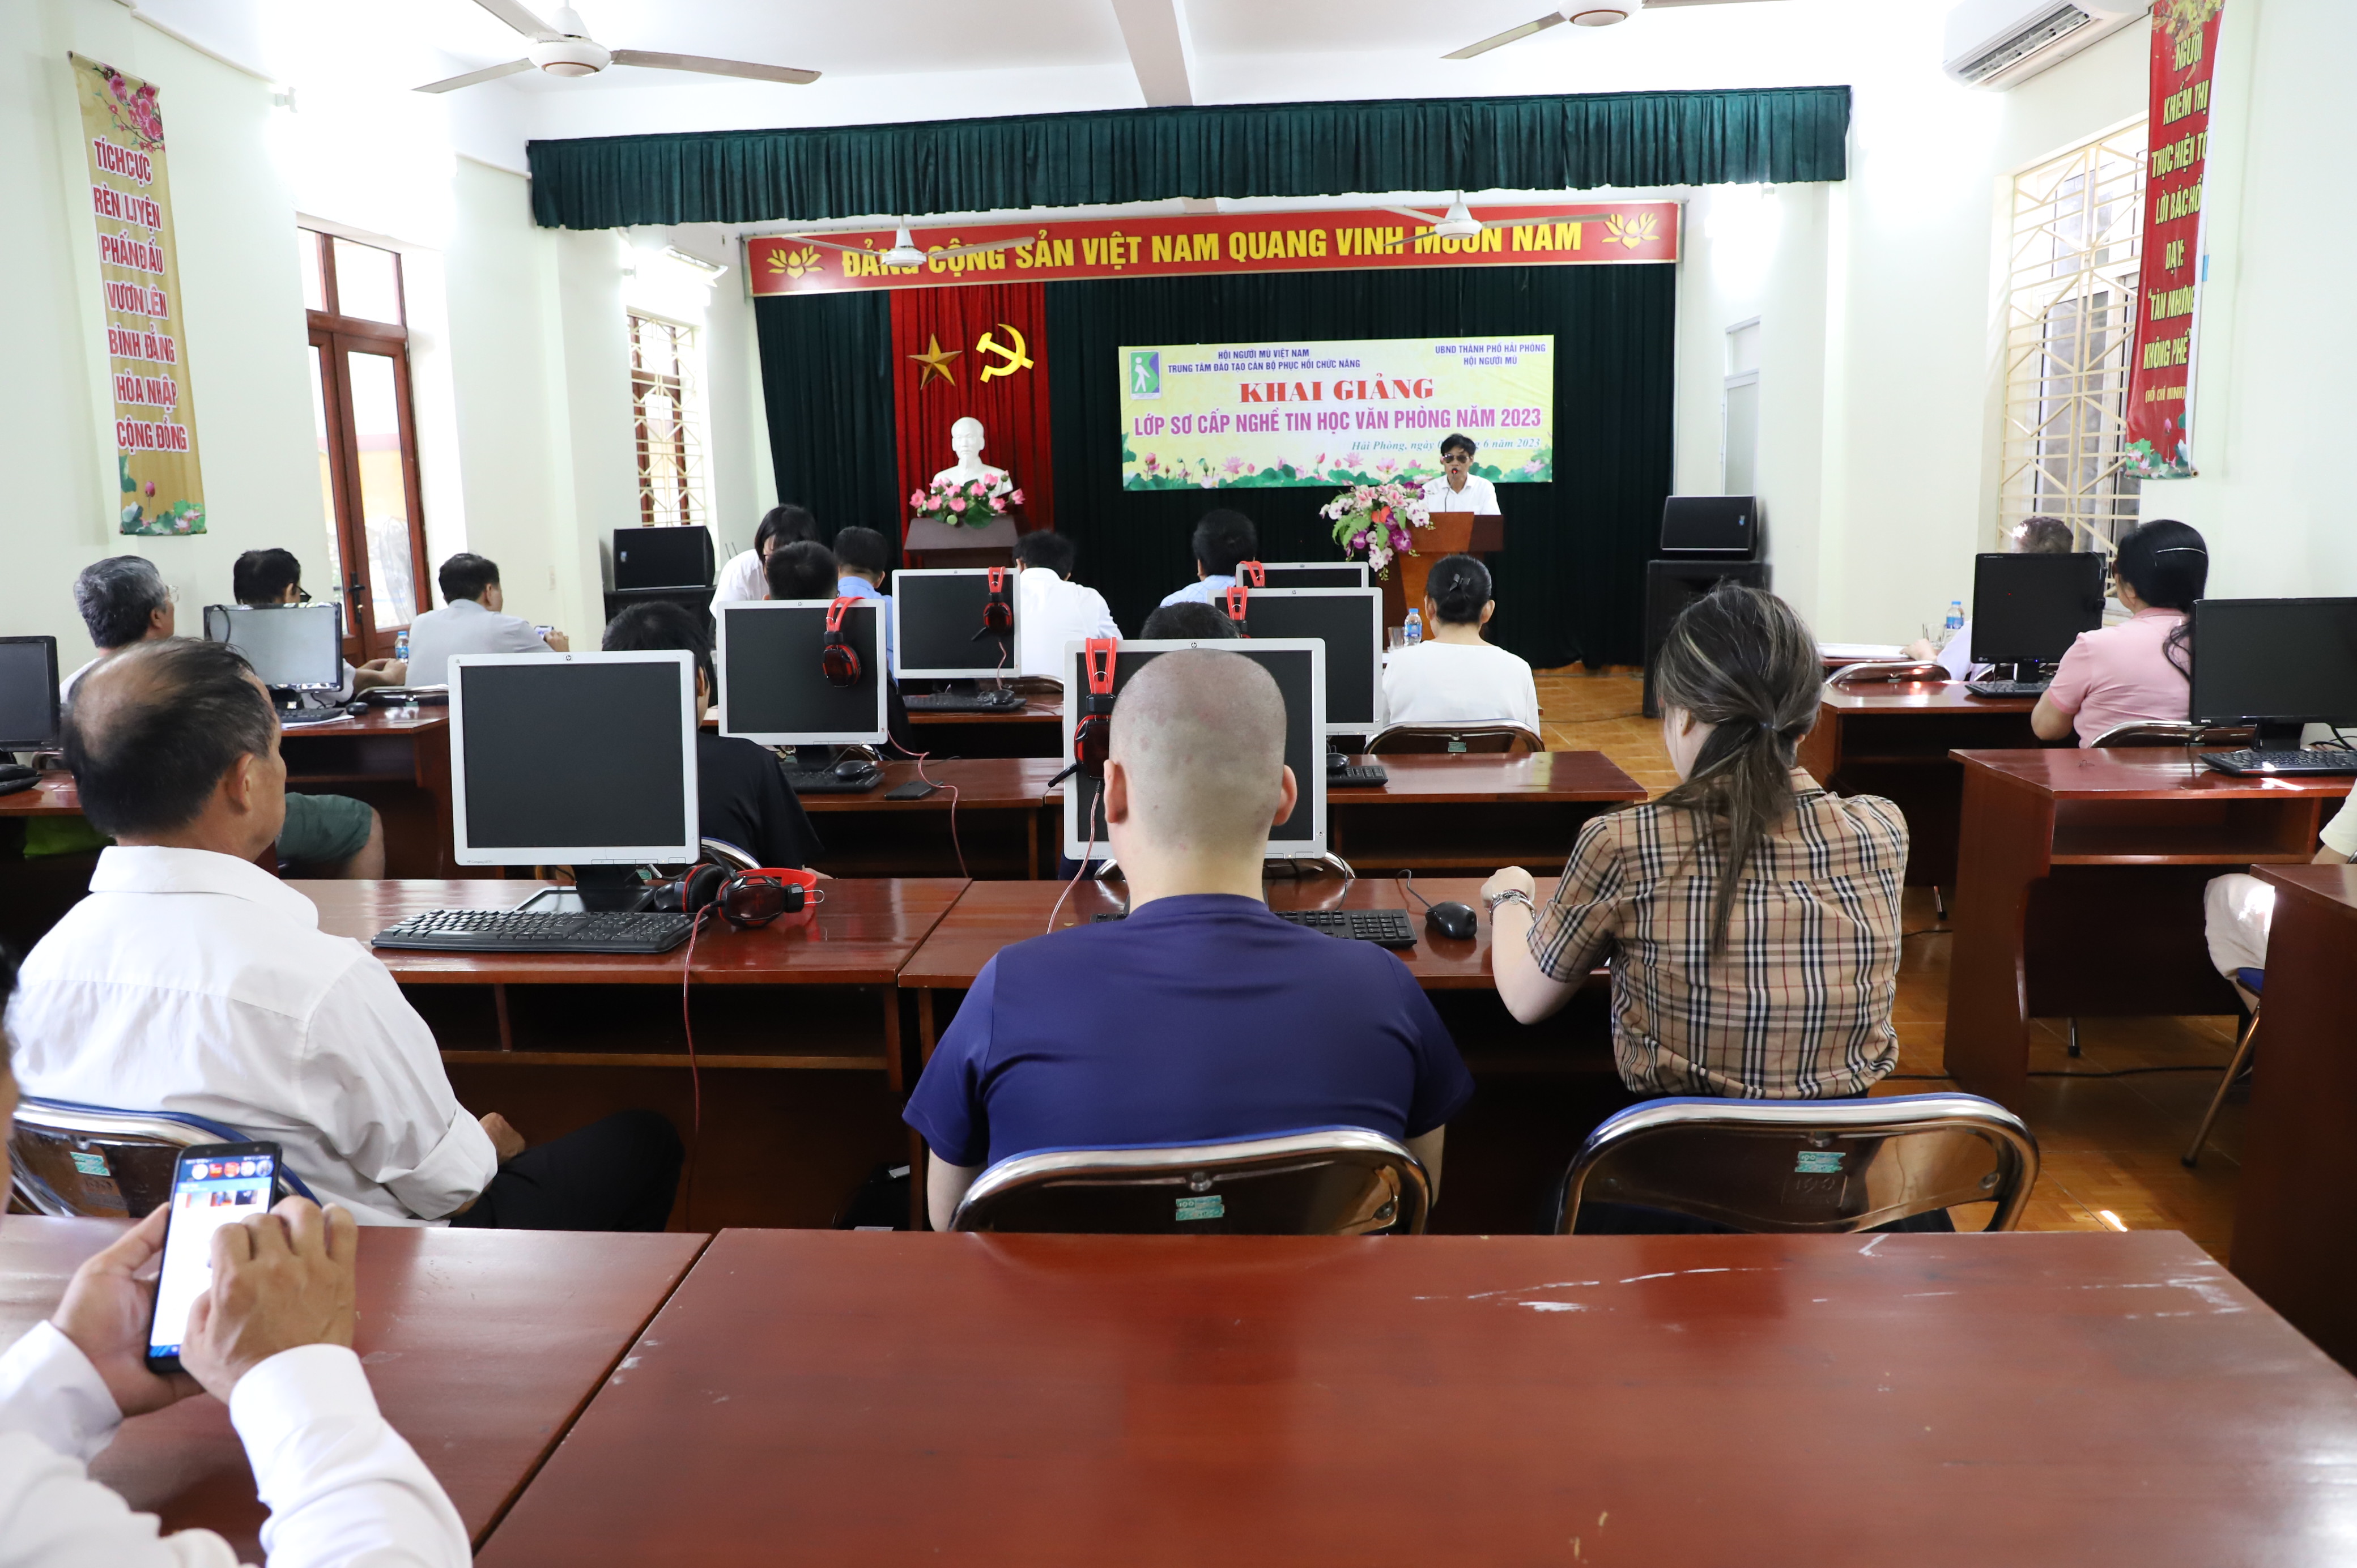 Khai giảng lớp tin học văn phòng tại thành phố Hải Phòng